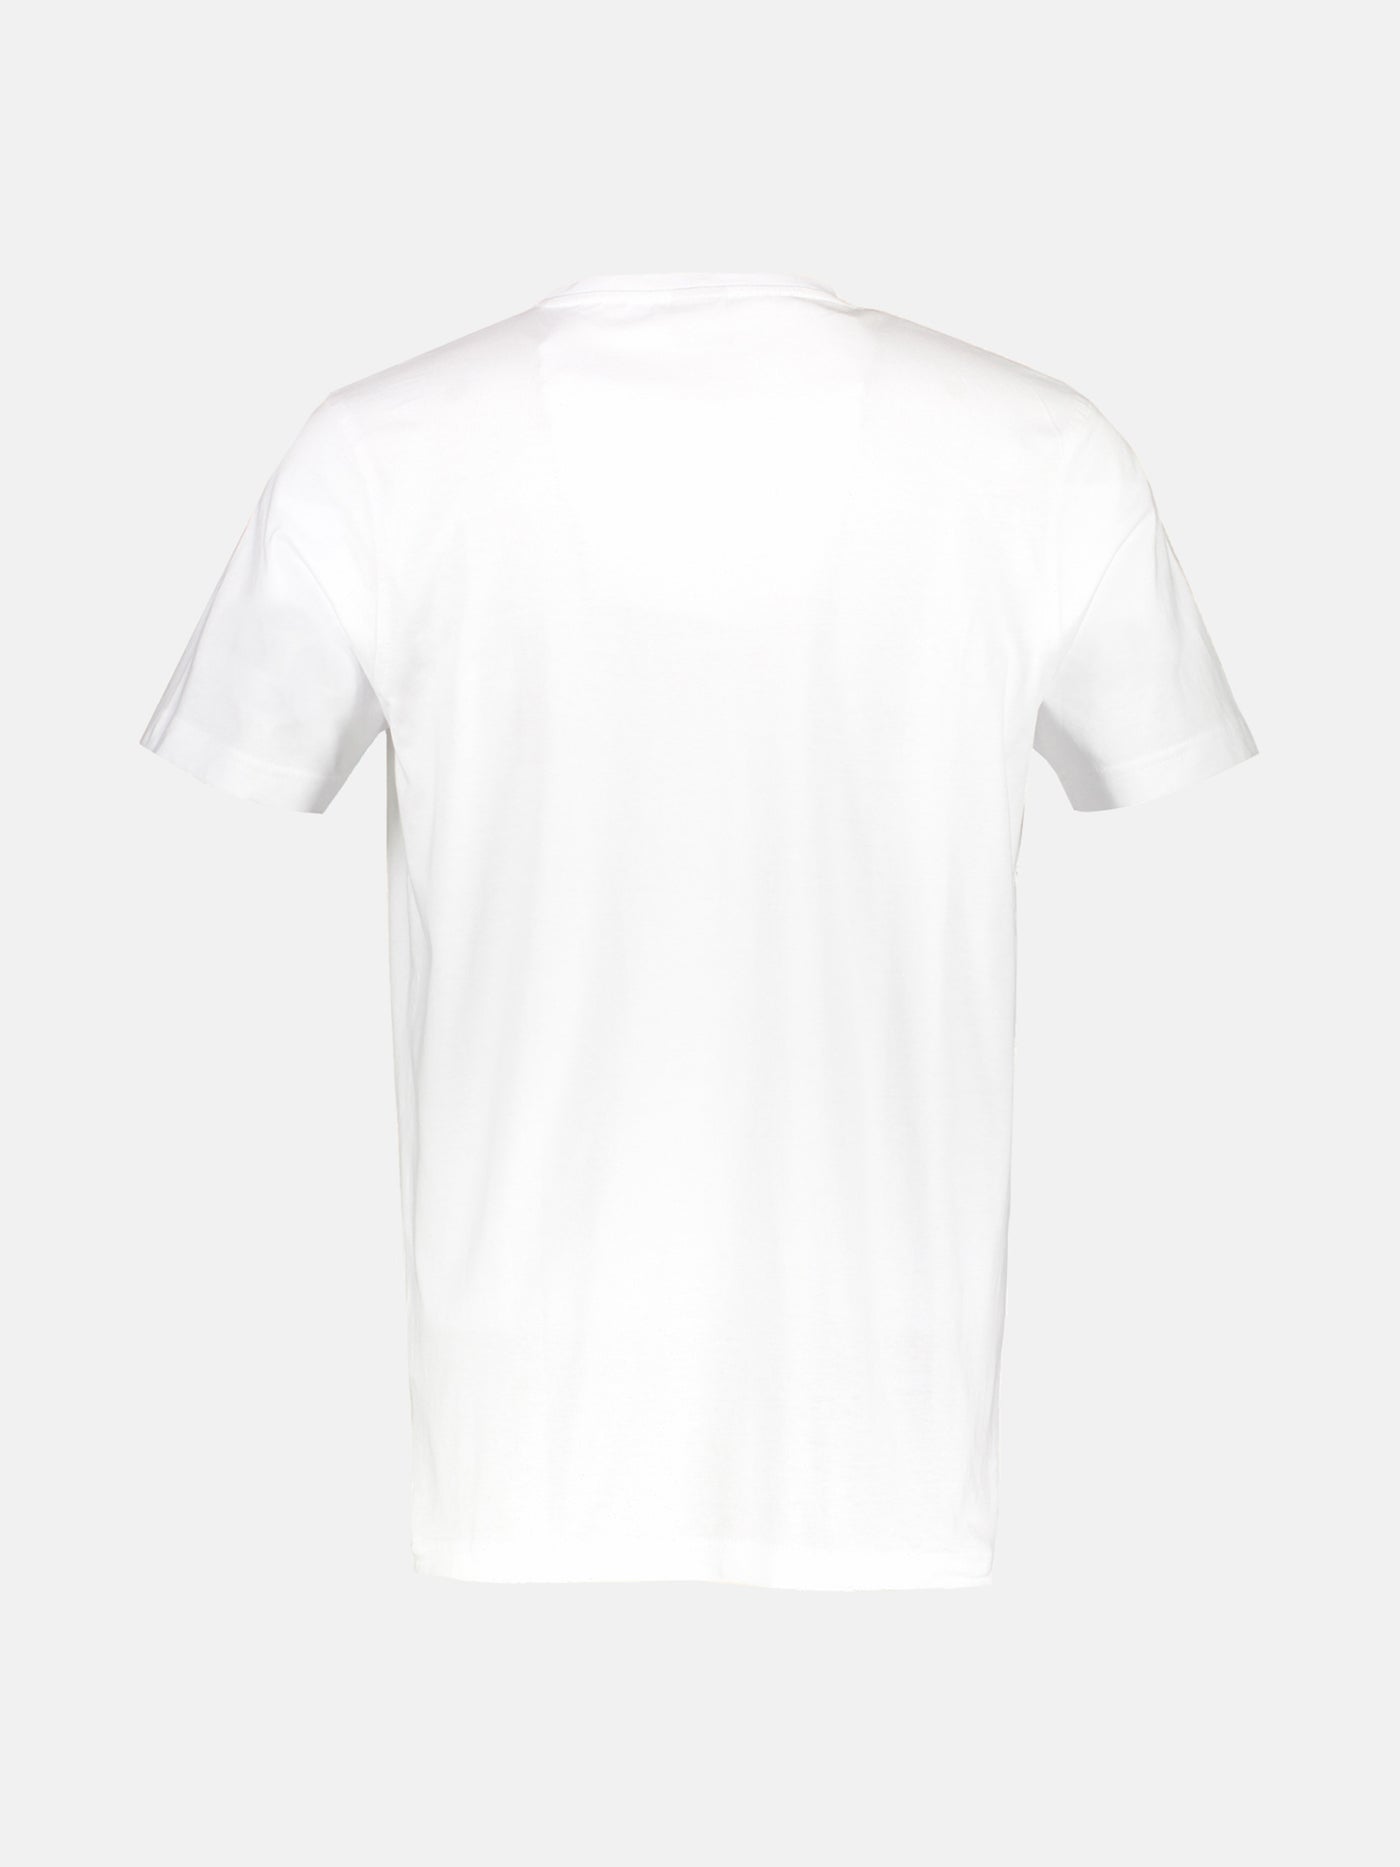 Rundhals Doppelpack T-Shirt für Herren in Premium Baumwollqualität